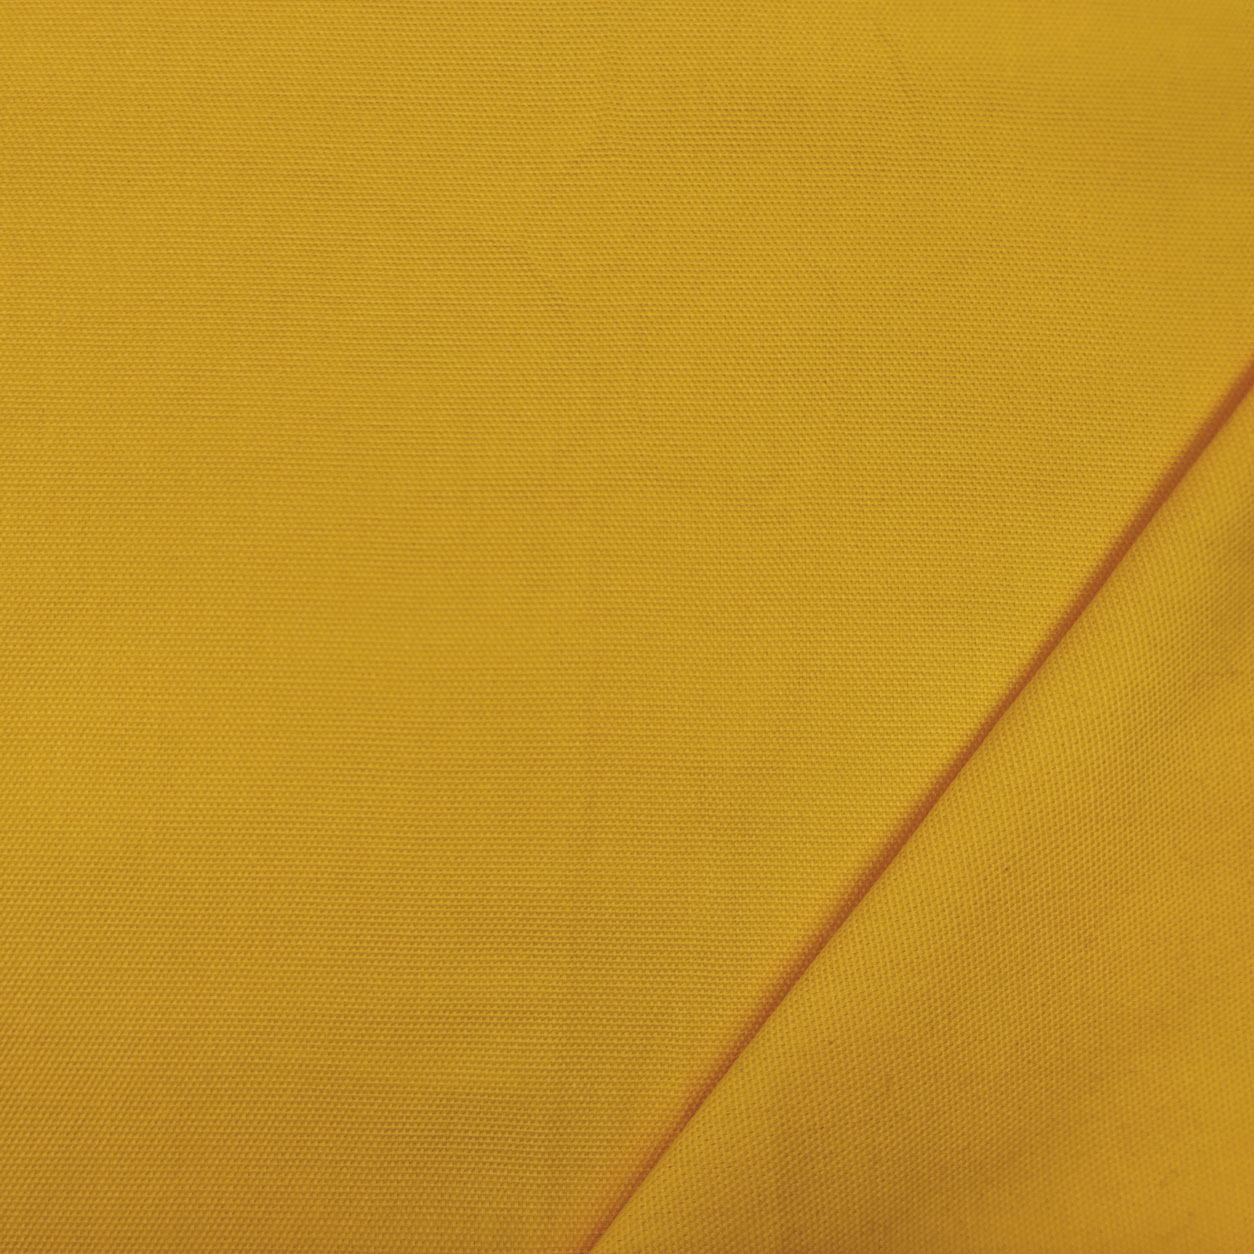 Tessuto panama di cotone giallo chiaro (1)